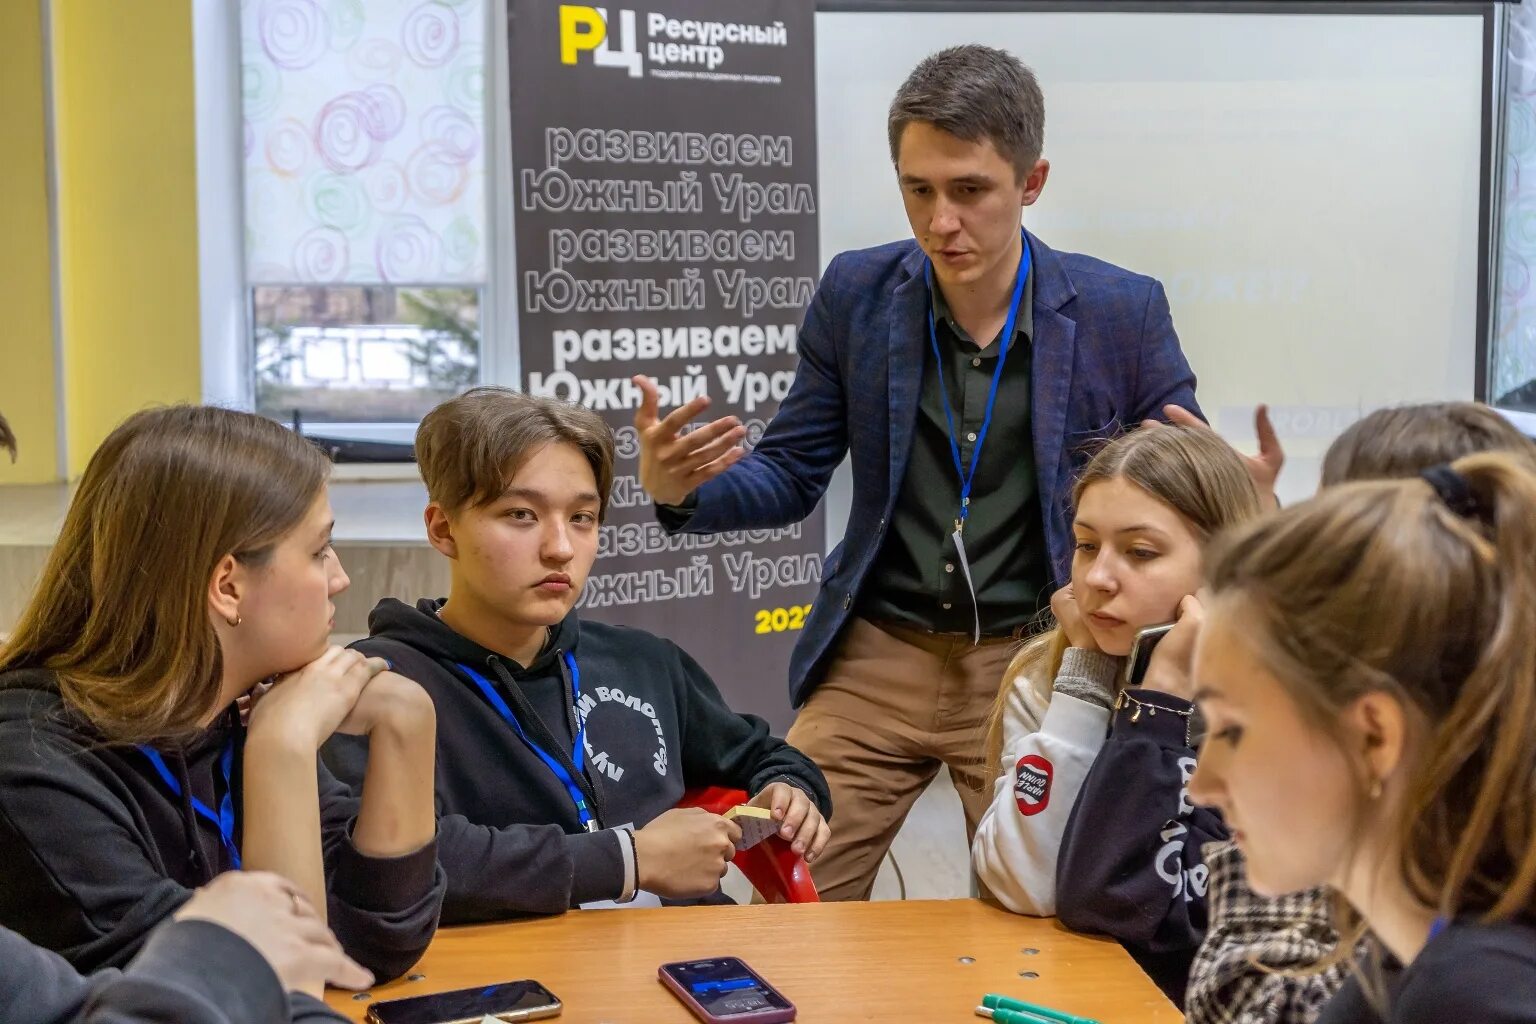 Поддержка инициатив молодежи проекты. Молодежь Челябинска. Поддержка инициатив молодежи. Ресурсный центр поддержки молодежи. Проекты для молодежи.